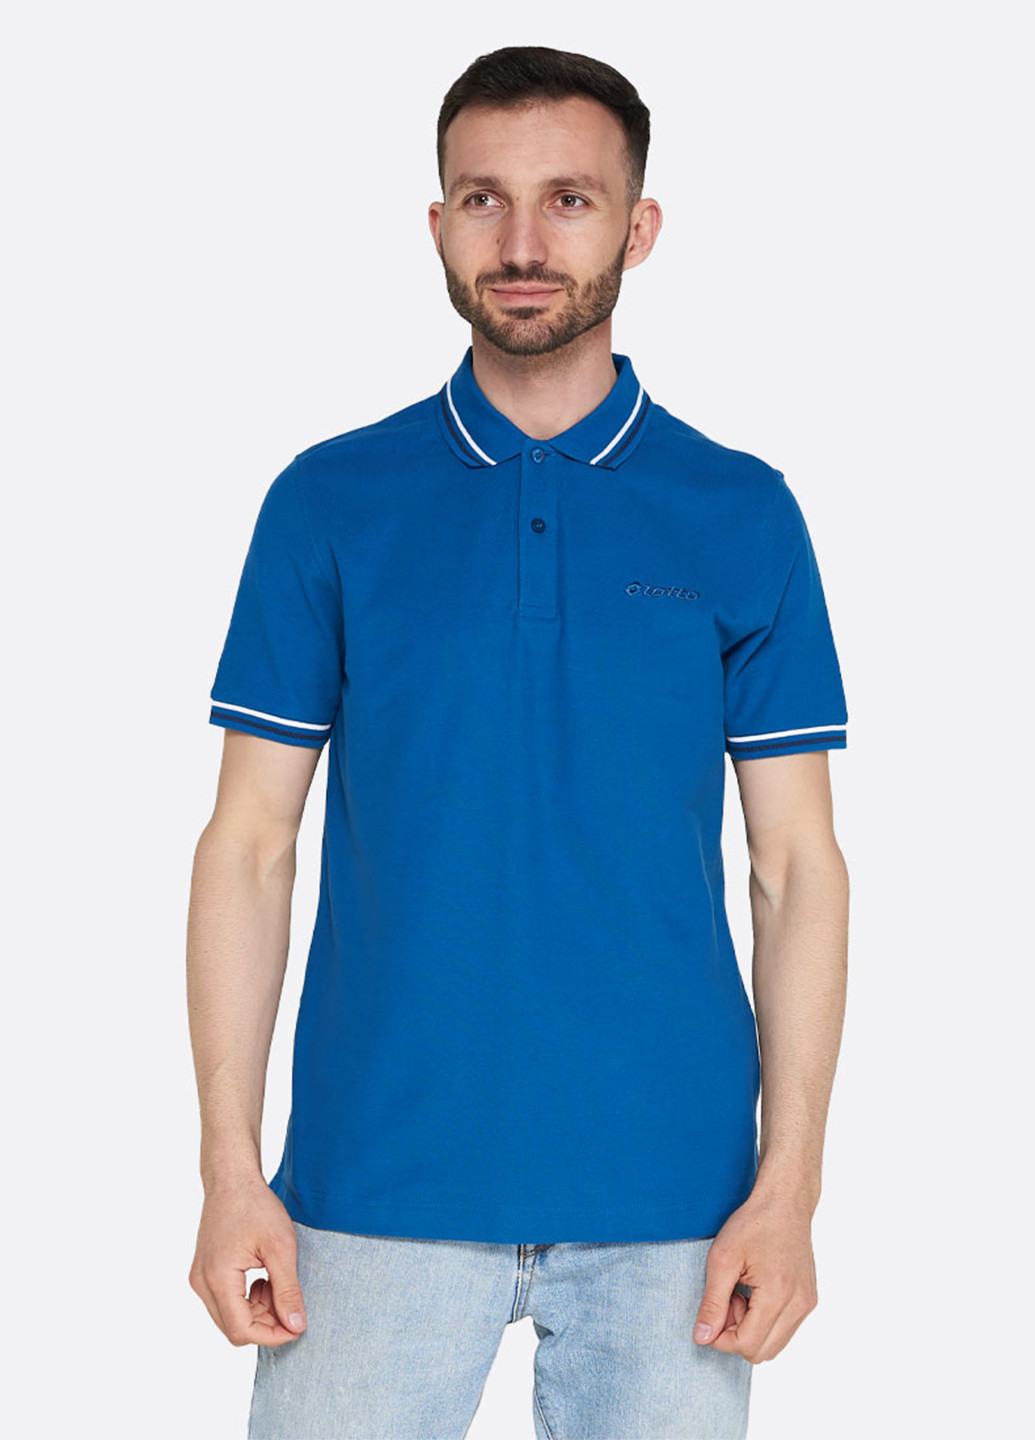 Темно-голубой футболка-поло для мужчин Lotto однотонная